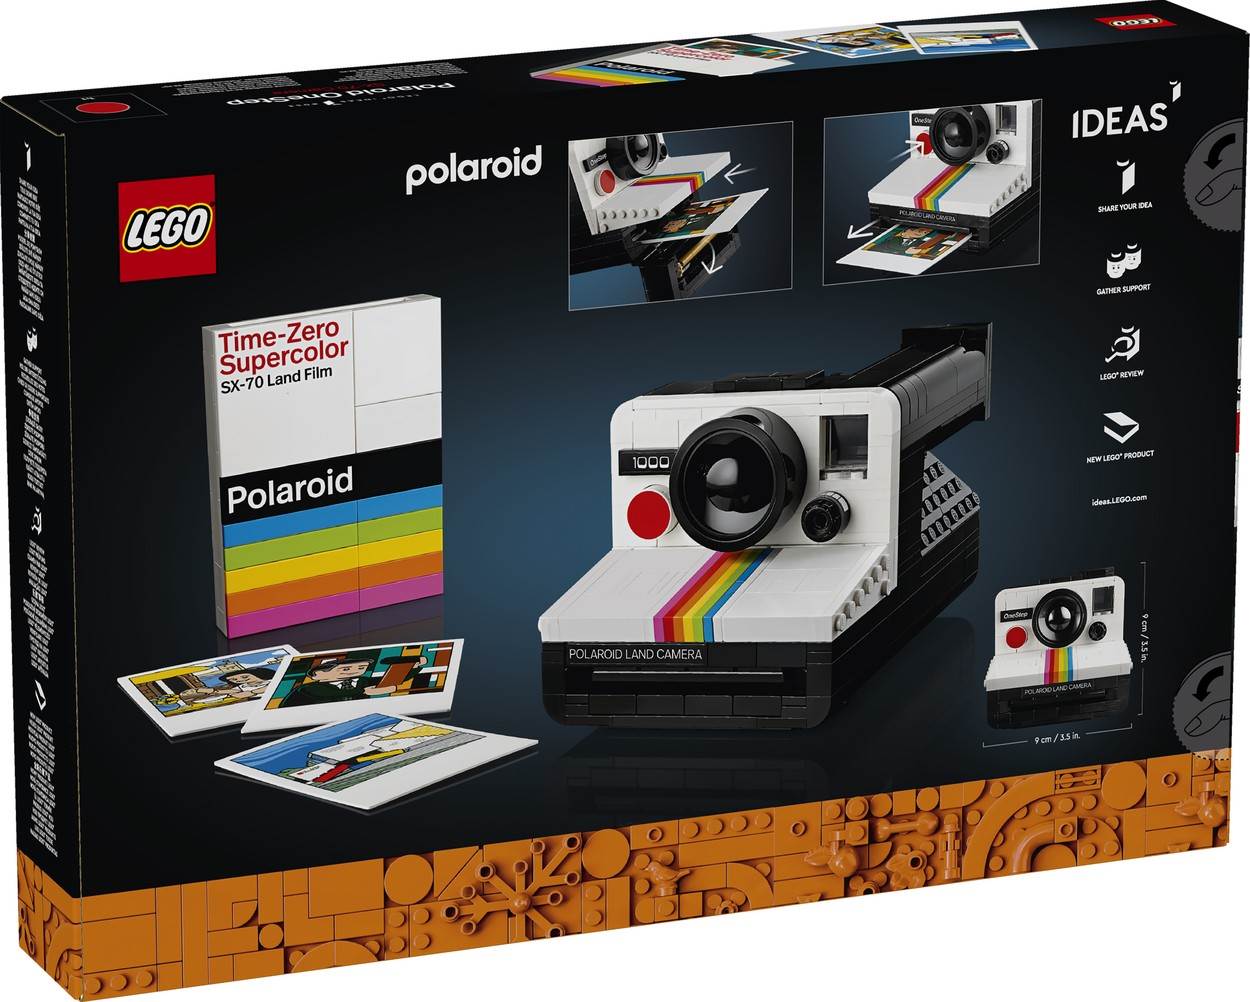  Polaroid OneStep SX-70, Lego (3).jpg 